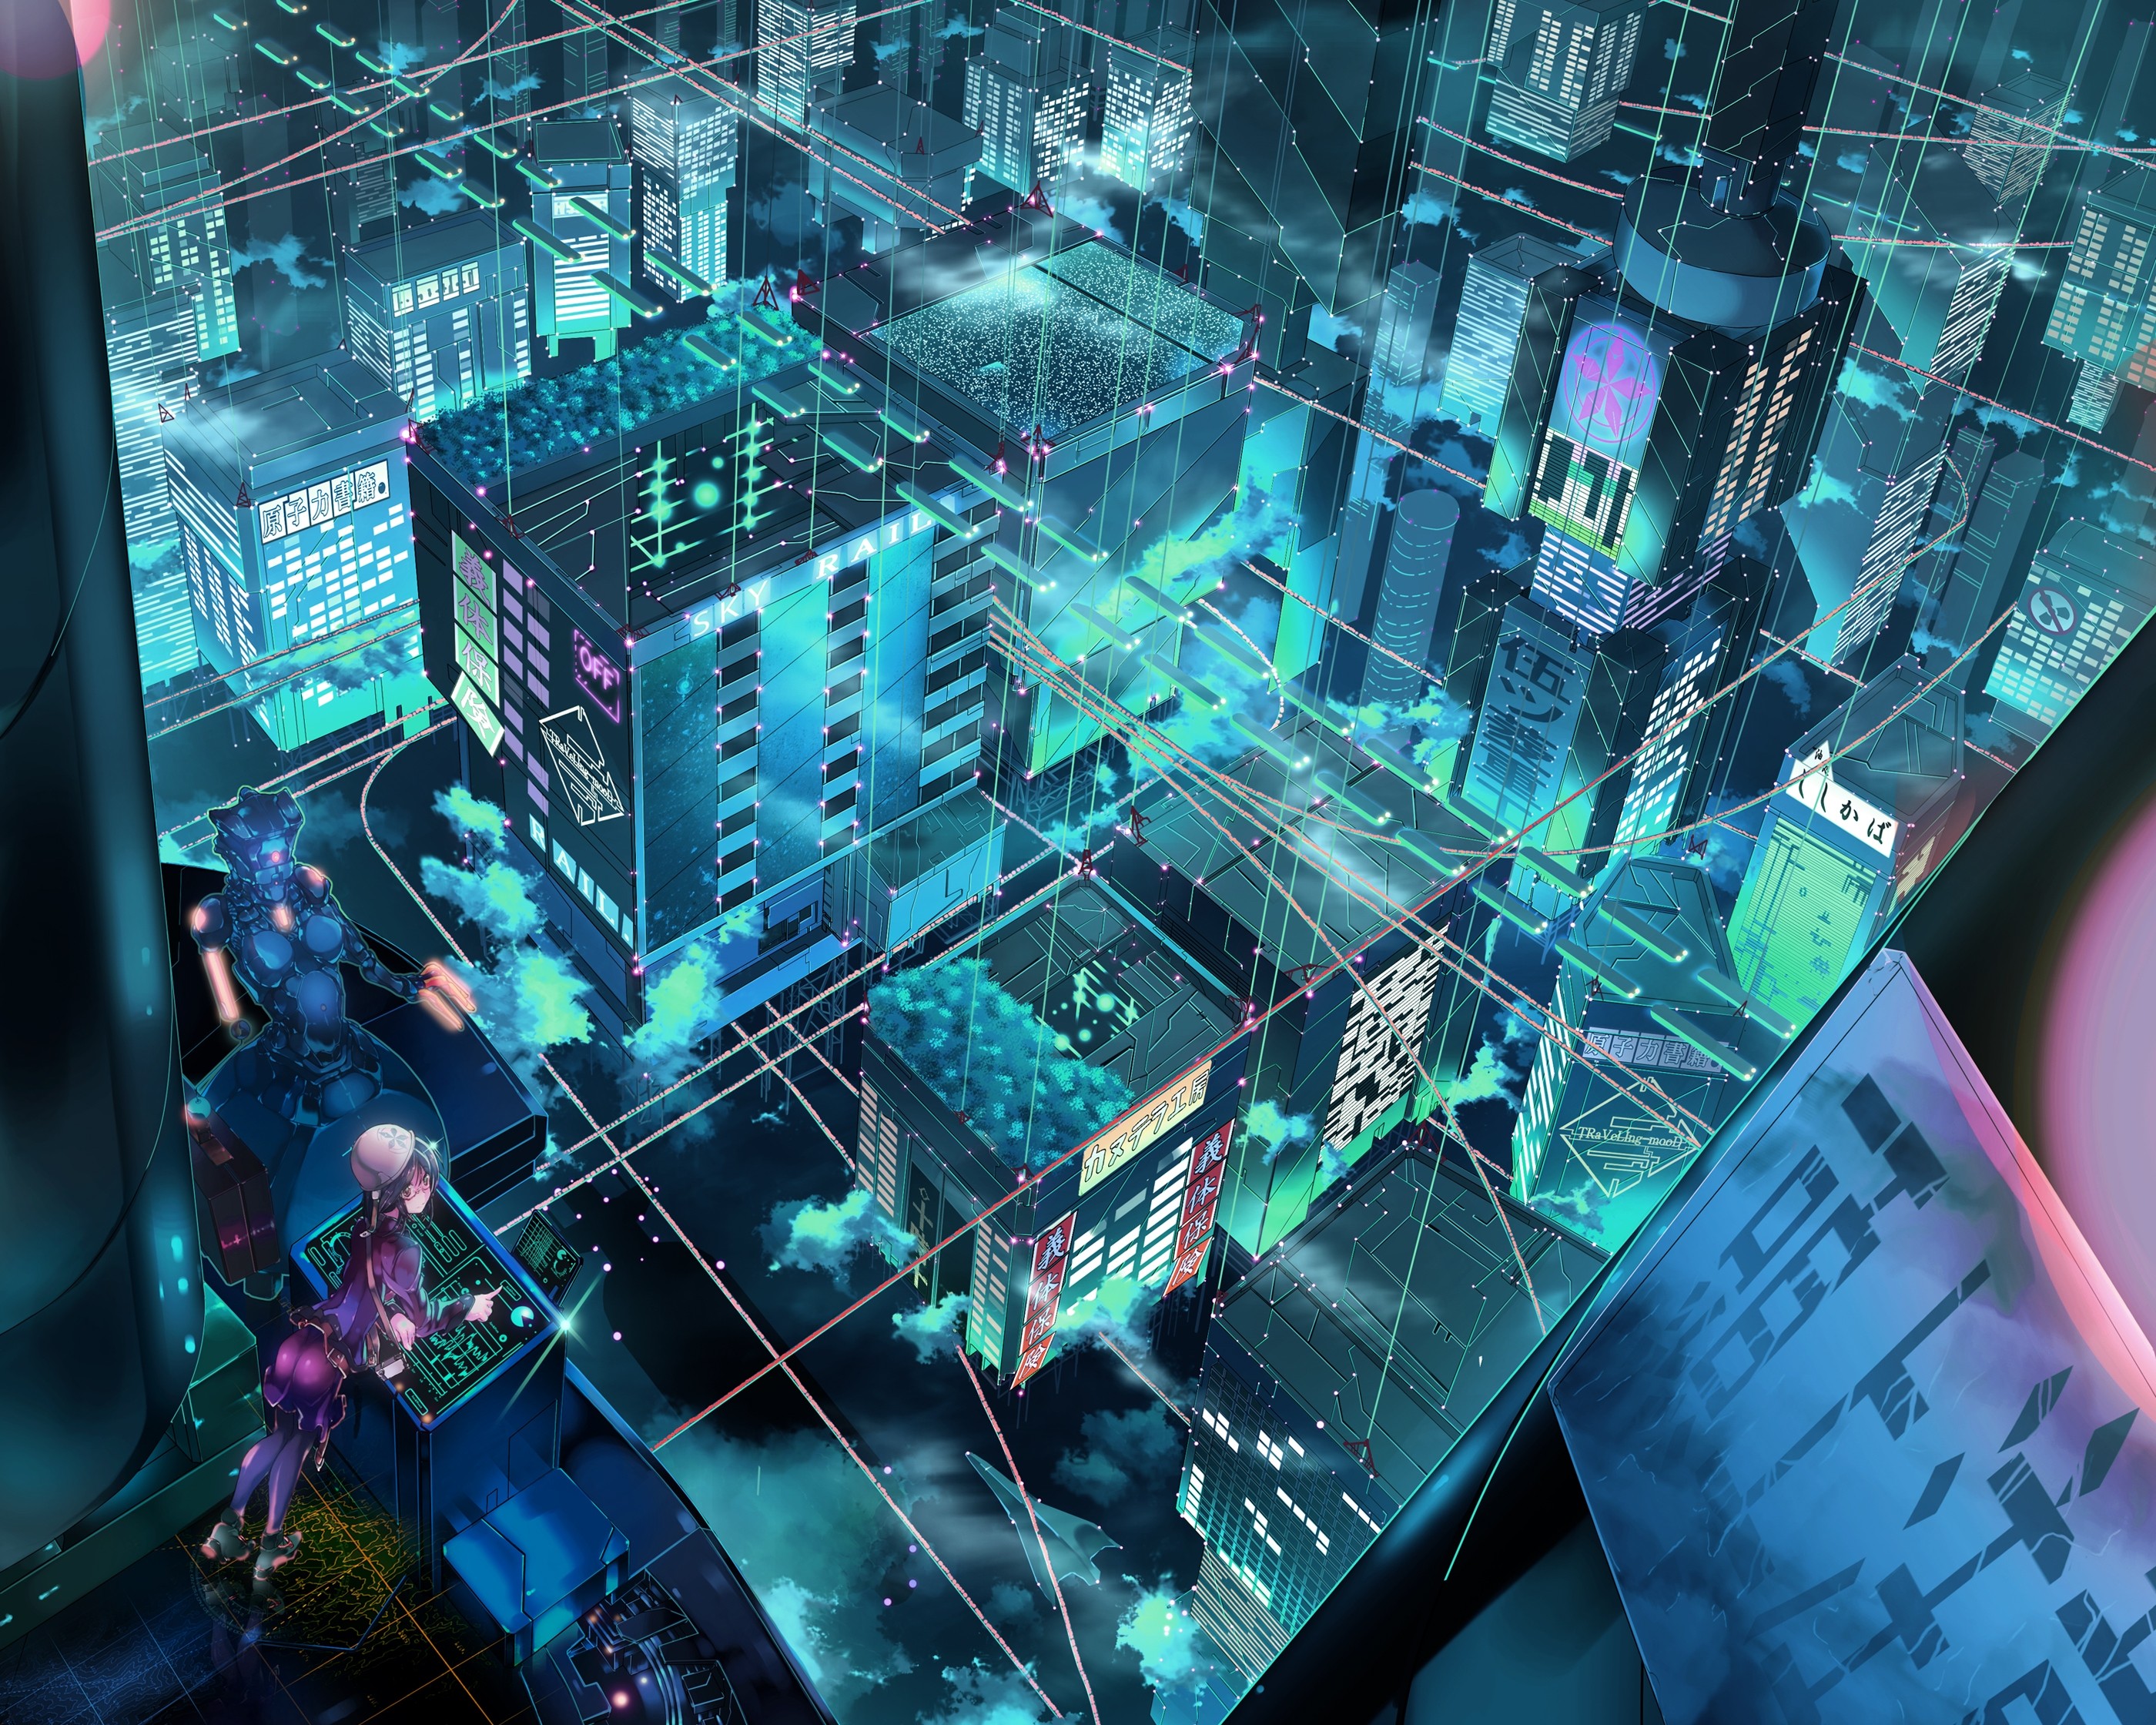 landscapes, cityscapes, robots, fantasy art, science fiction - desktop wallpaper